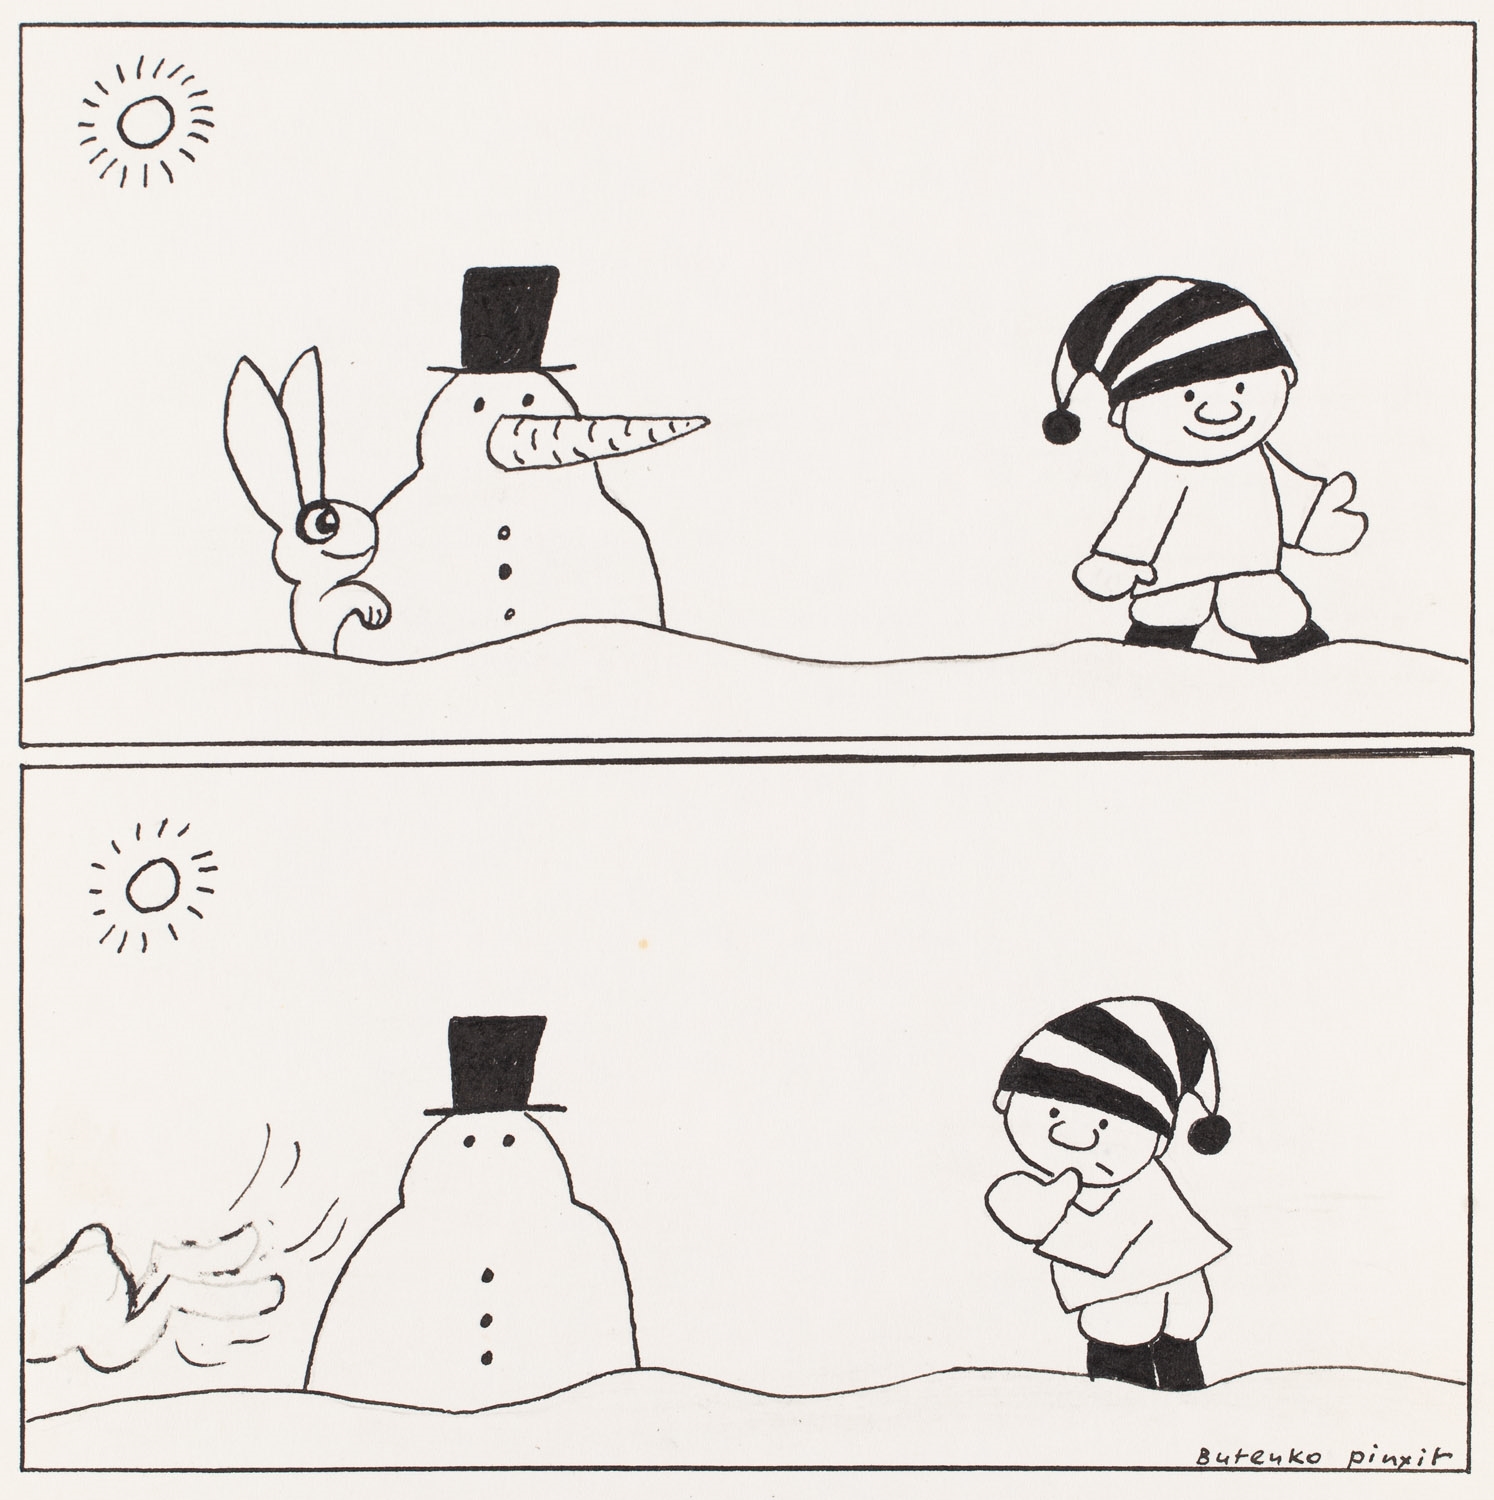 Snowman by Bohdan Butenko